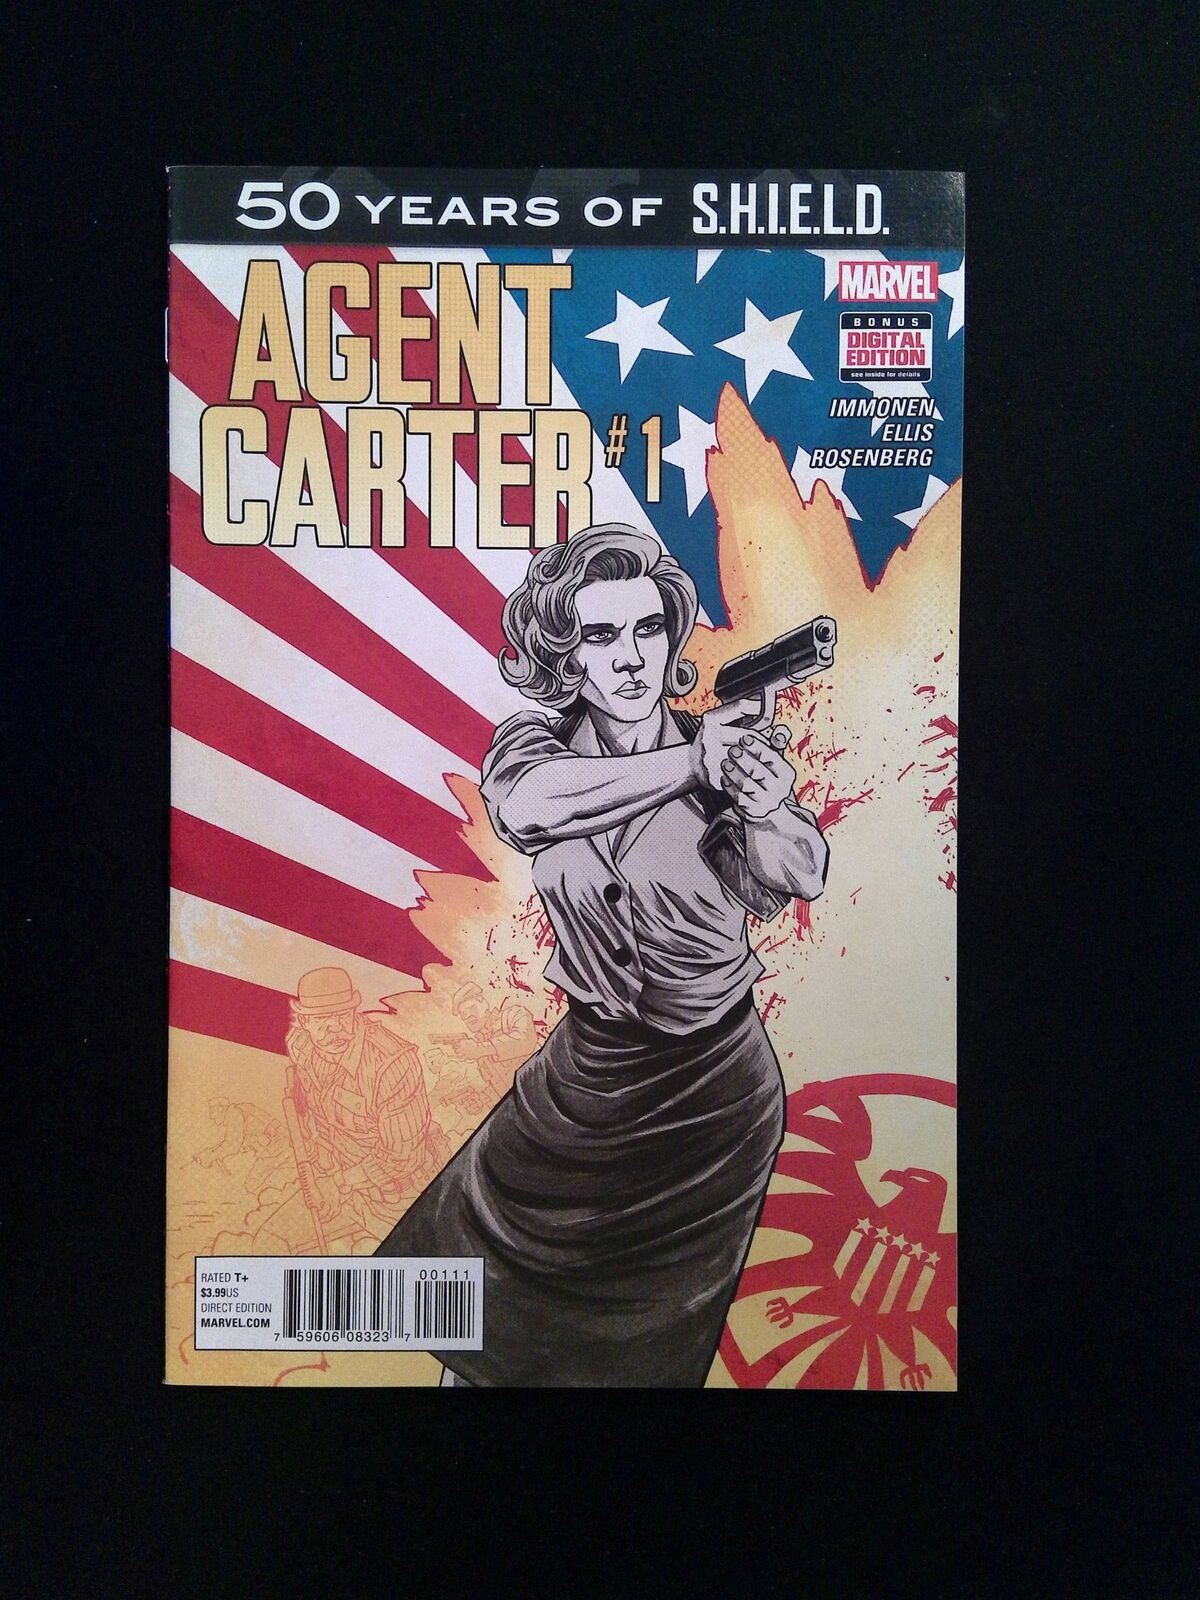 Agent Carter S.H.I.E.L.D 50th  Anniversary #1  MARVEL Comics 2015 VF+